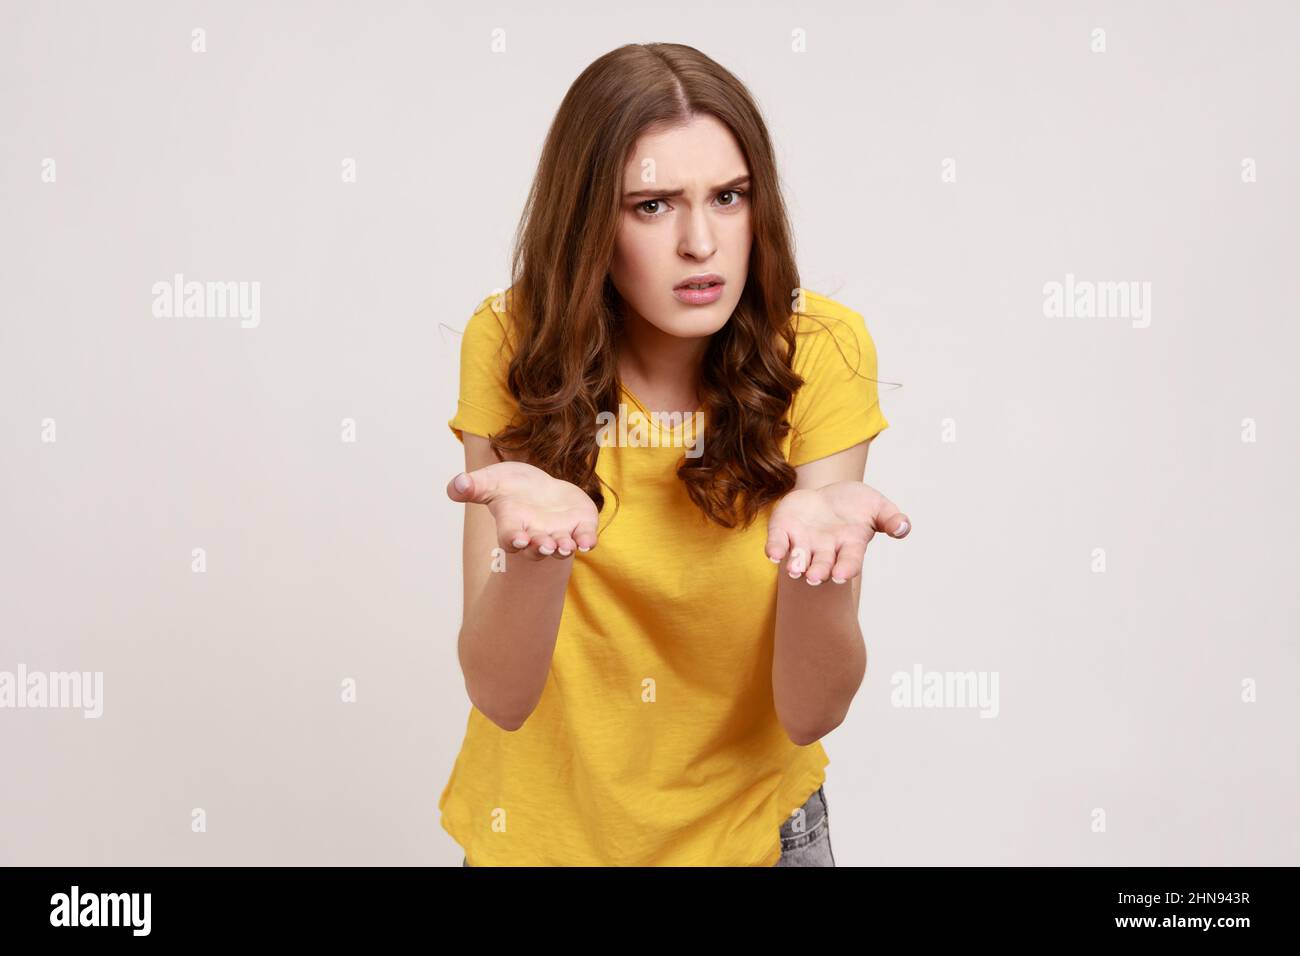 Porträt eines enttäuschten unglücklichen Teenagers in gelbem T-Shirt, das mit erhobenen Händen steht und fragt, was du willst, wütendes Gesicht. Innenaufnahme des Studios isoliert auf grauem Hintergrund. Stockfoto